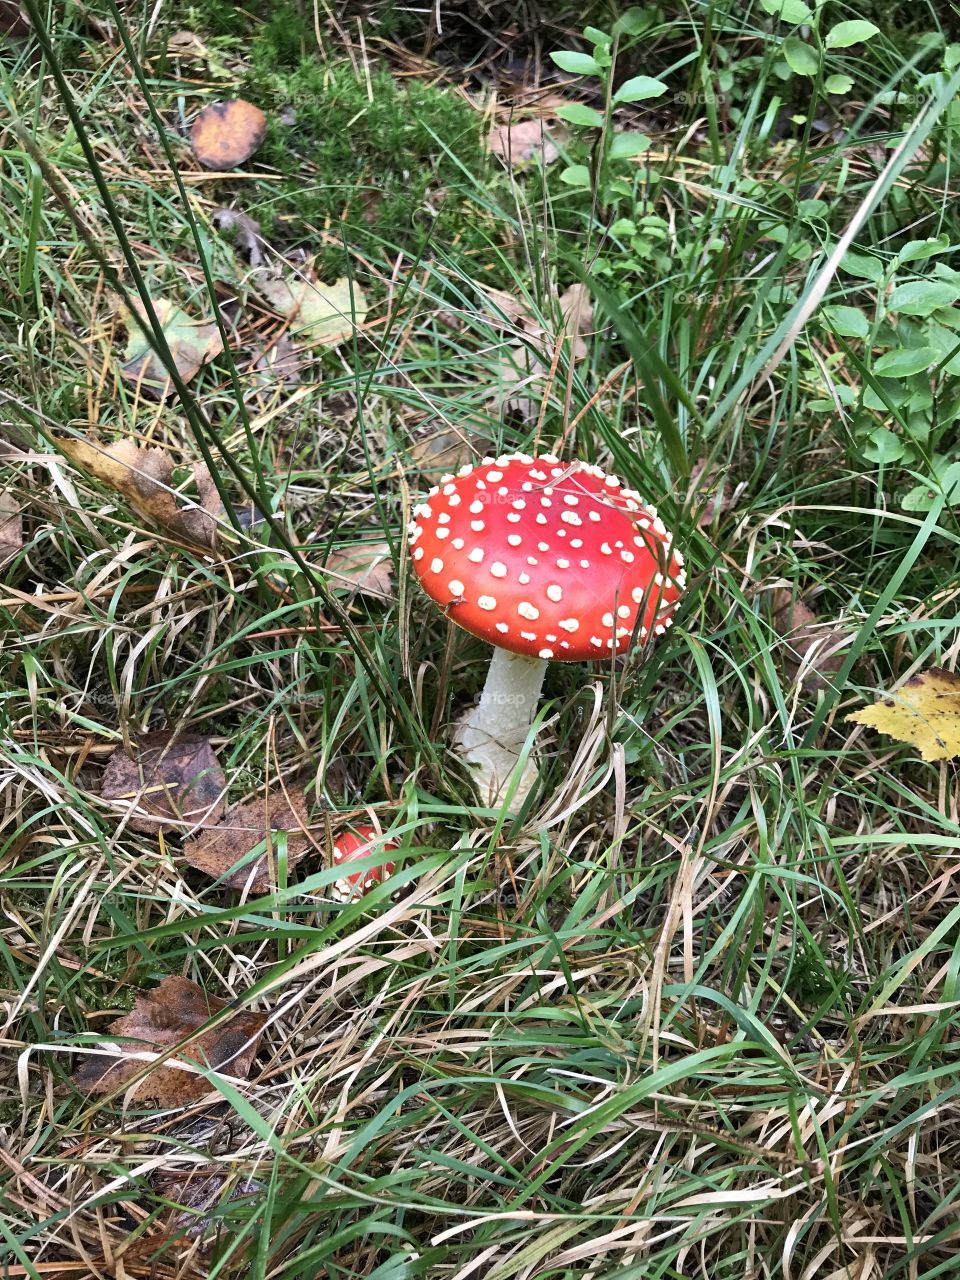 Wild nice mushroom 🍄